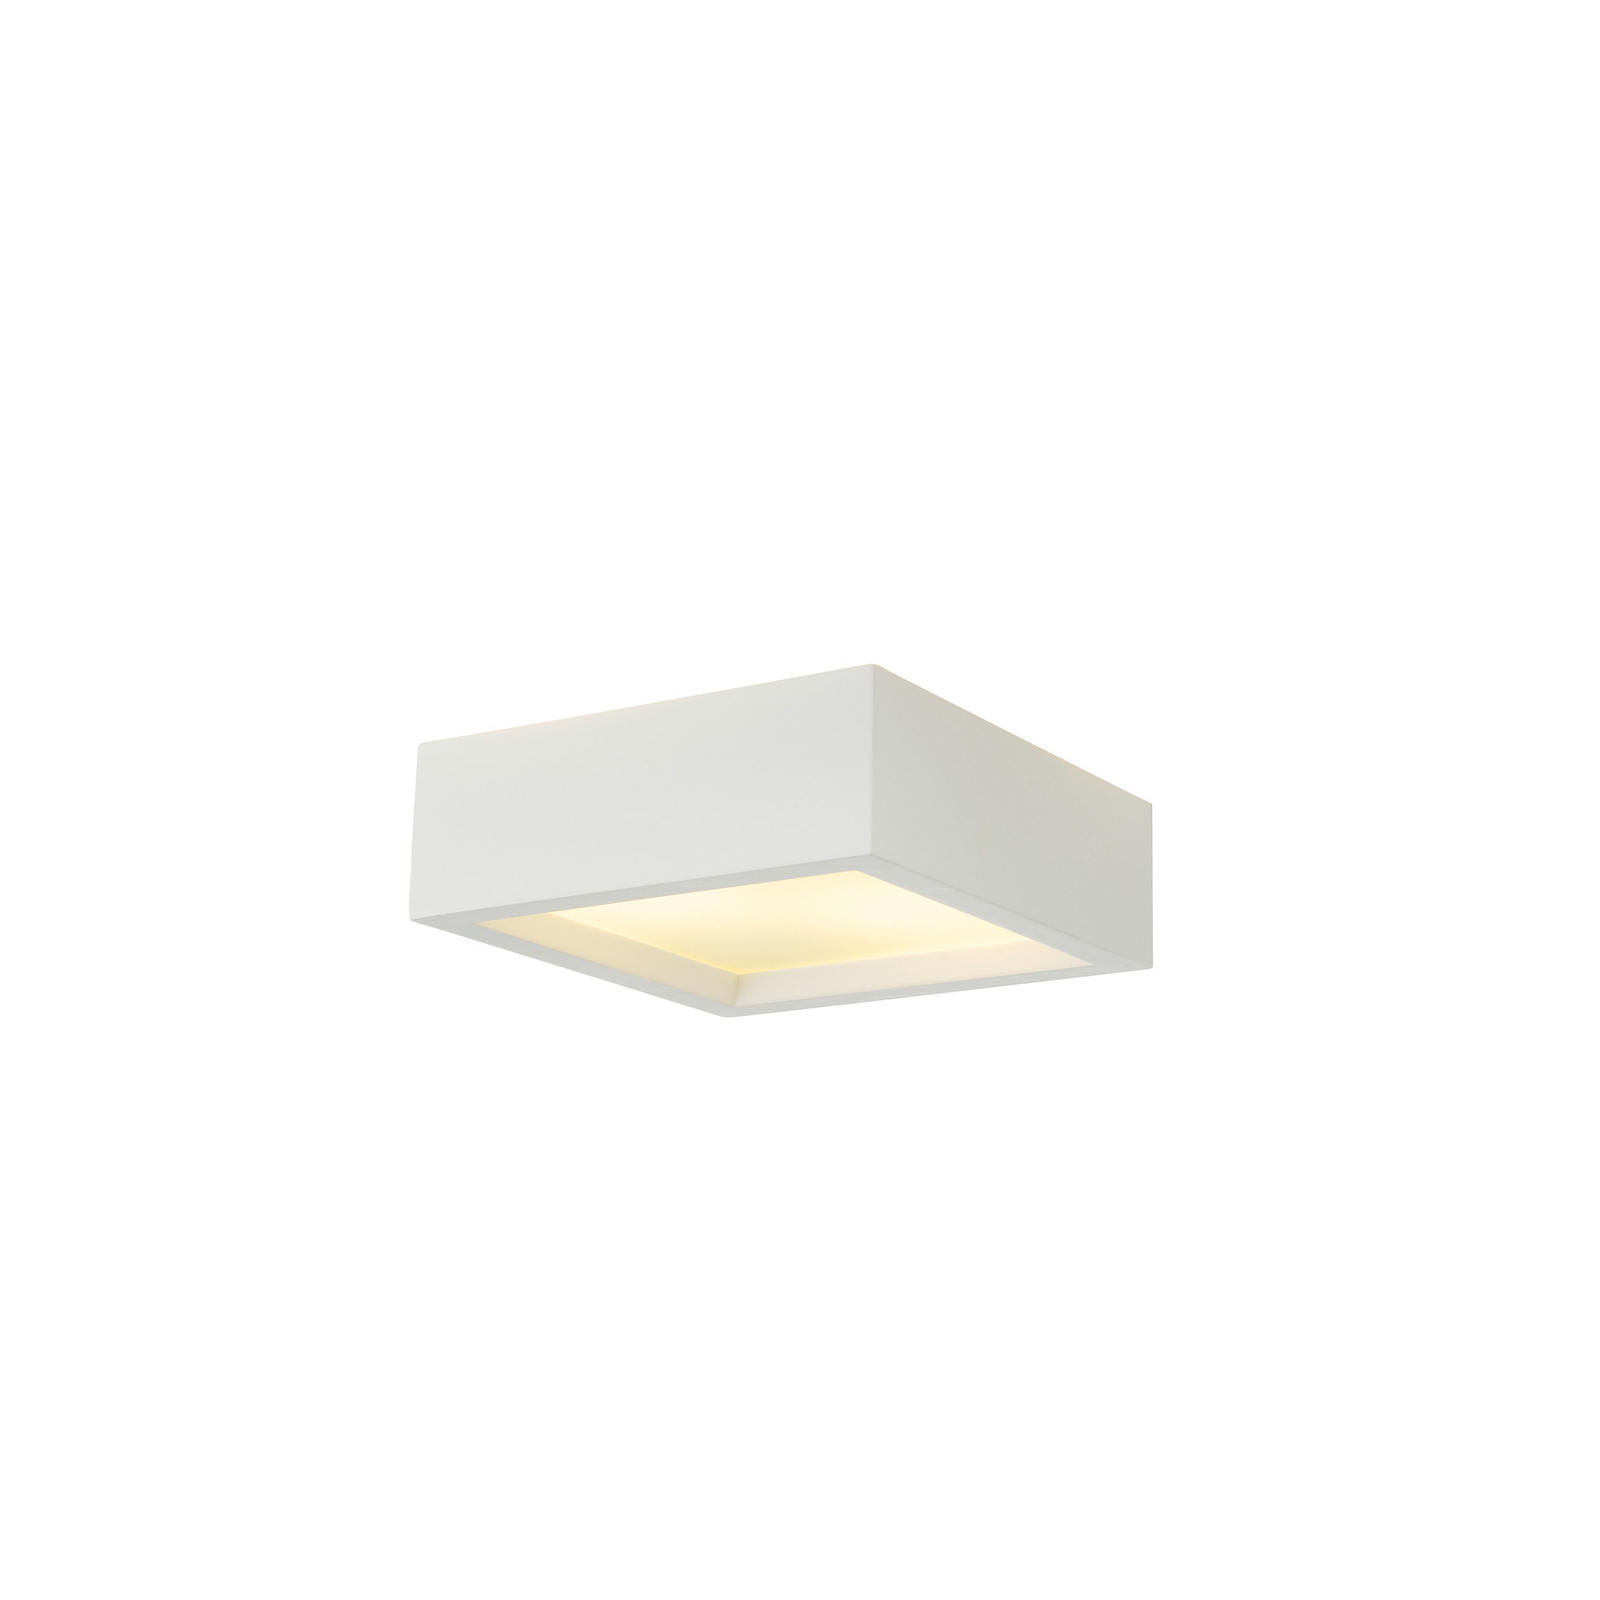 Lampa sufitowa SLV Plastra 104, biały, gips, szerokość 25 cm